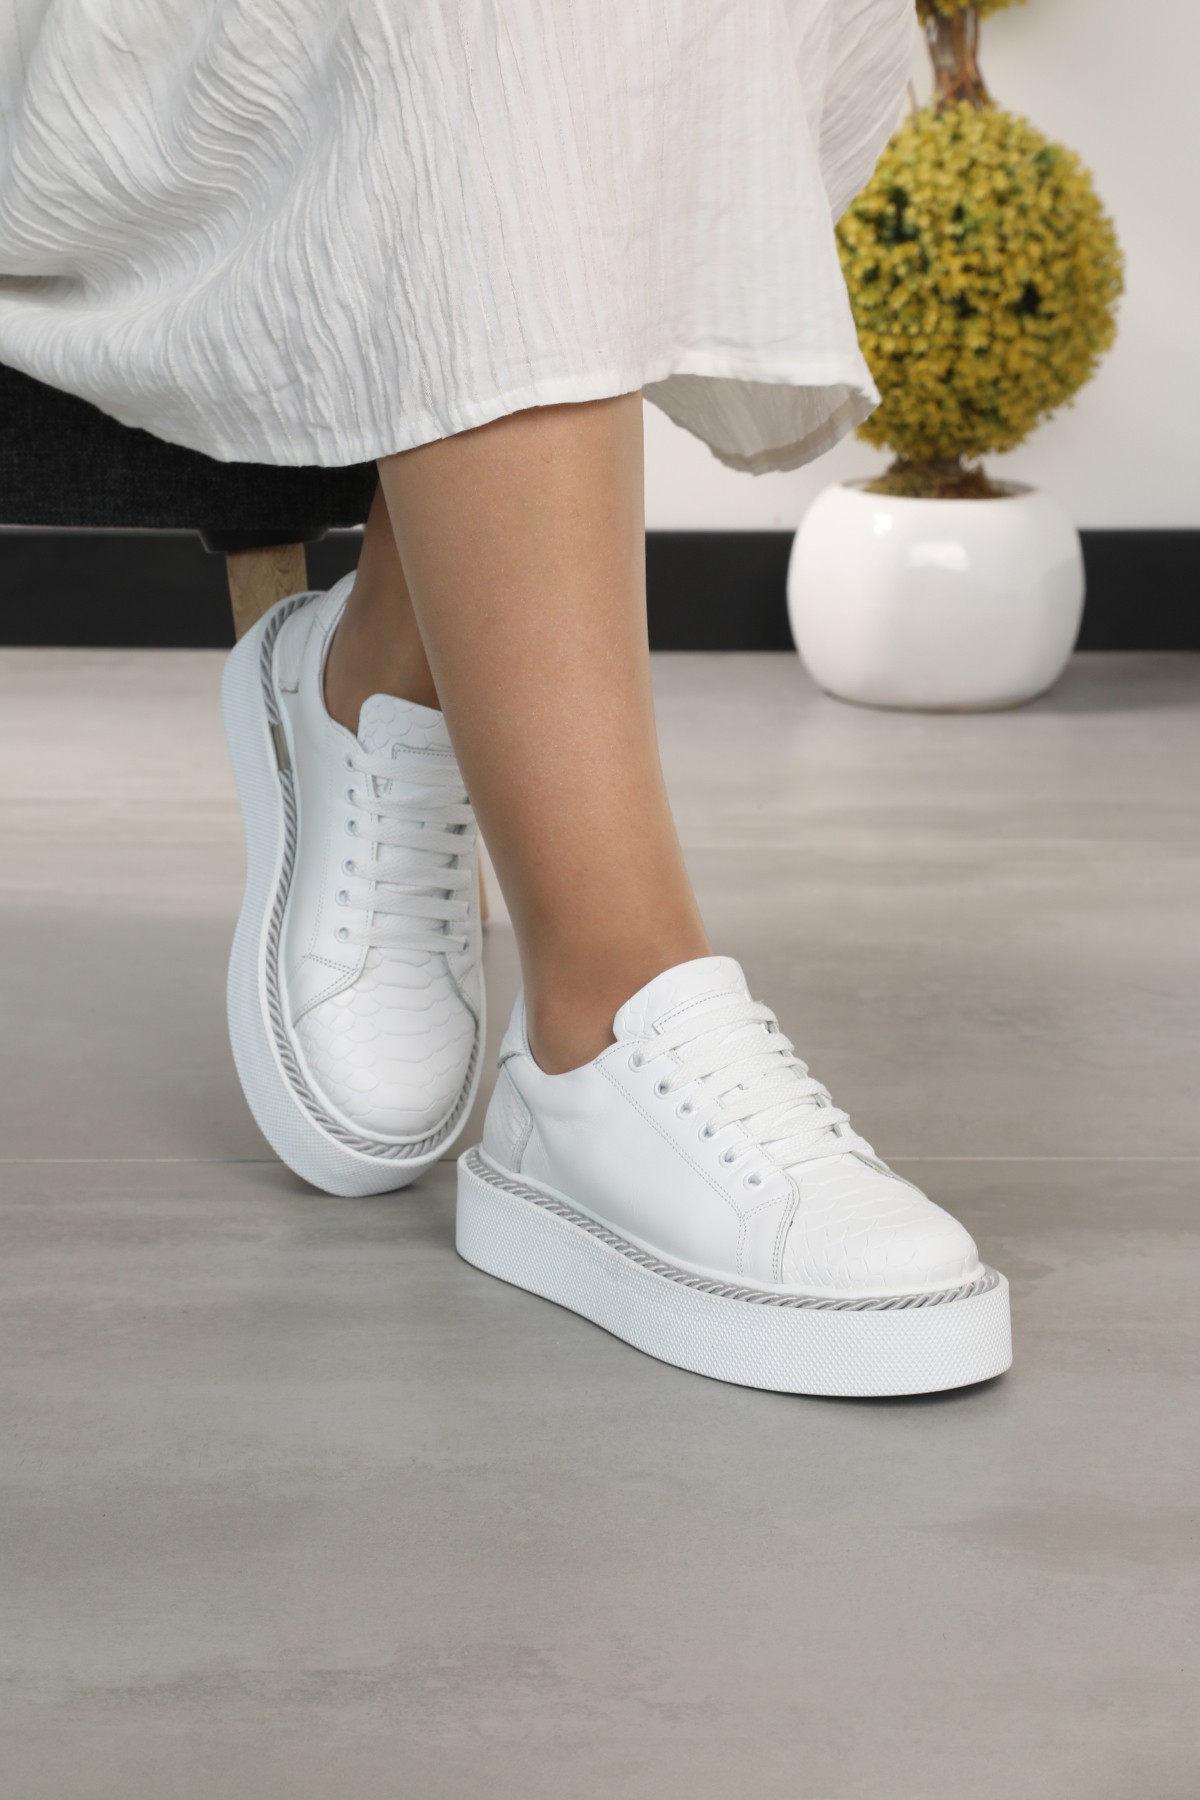 Cooliza Hakiki Deri Sneaker Yüksek Taban Rahat Günlük Kadın Spor Ayakkabı  - Beyaz